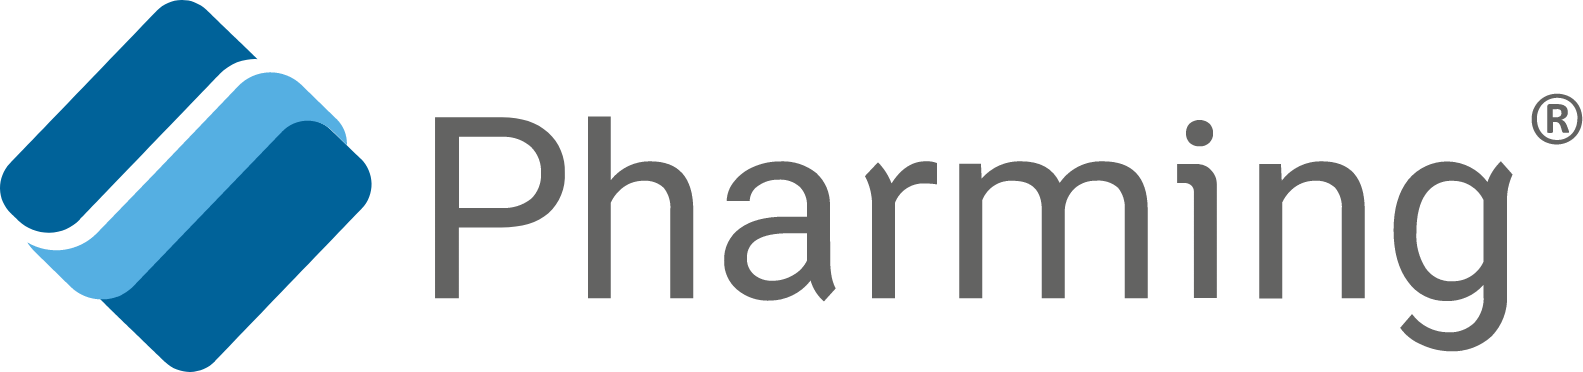 Pharming Group logo large (transparent PNG)